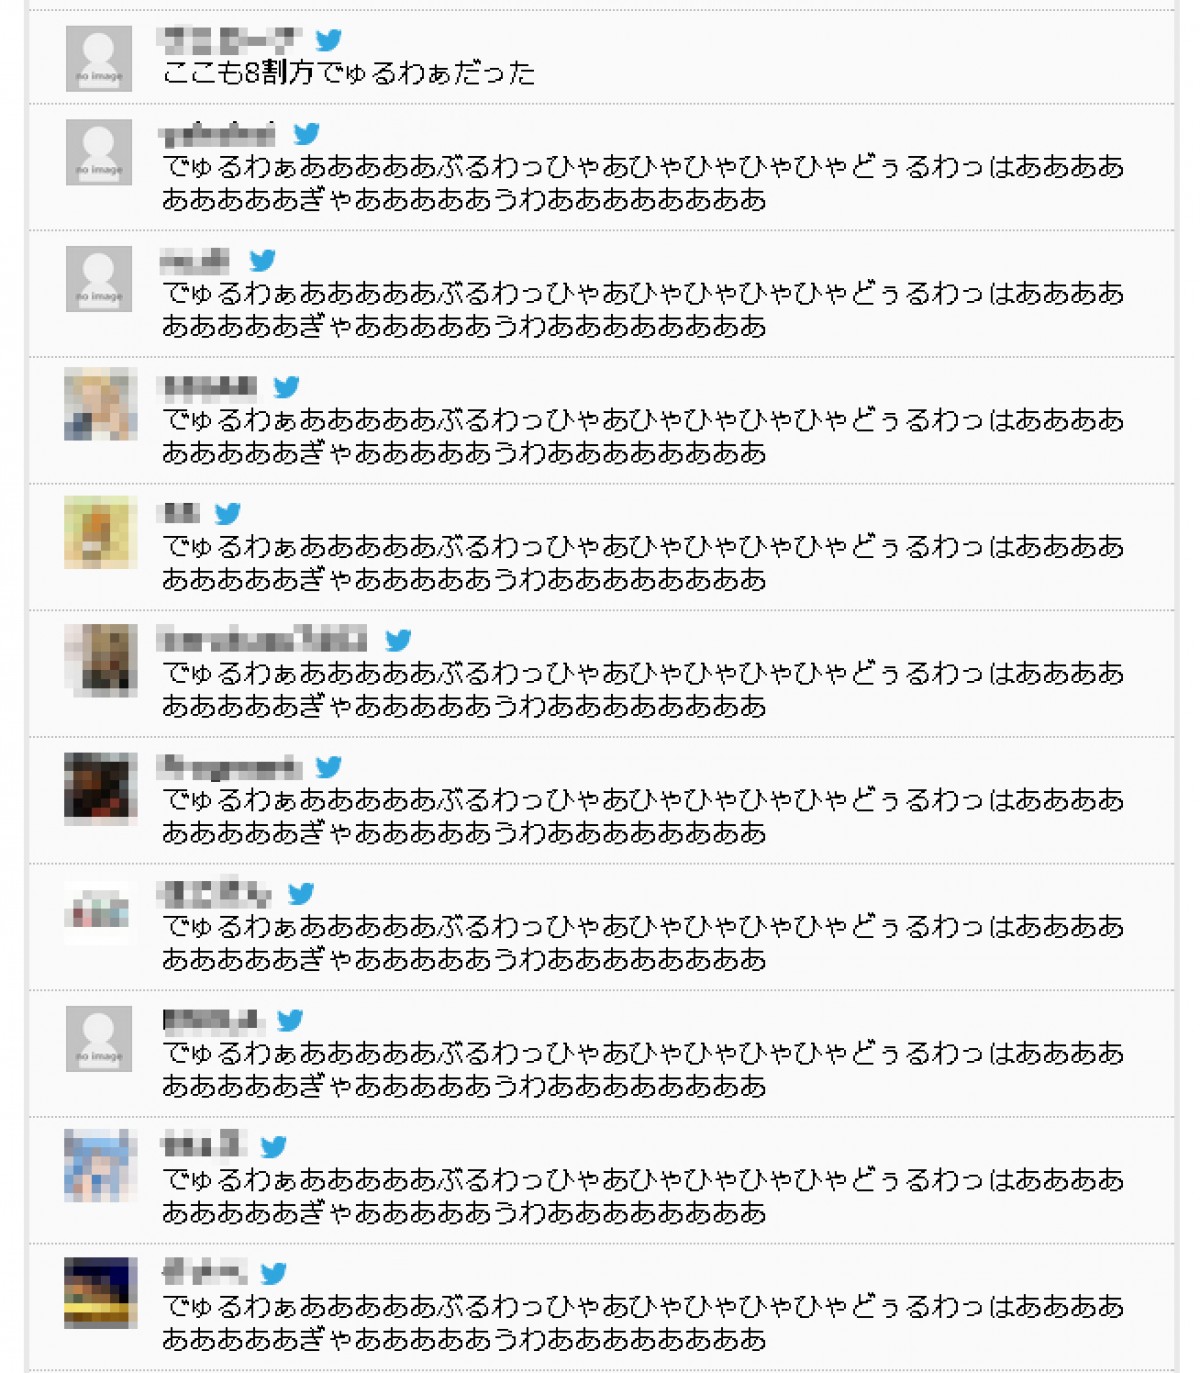 阿澄佳奈の入籍相手「普通のおやじ」発言を受け、ユーザーコメントがカオス状態に!?